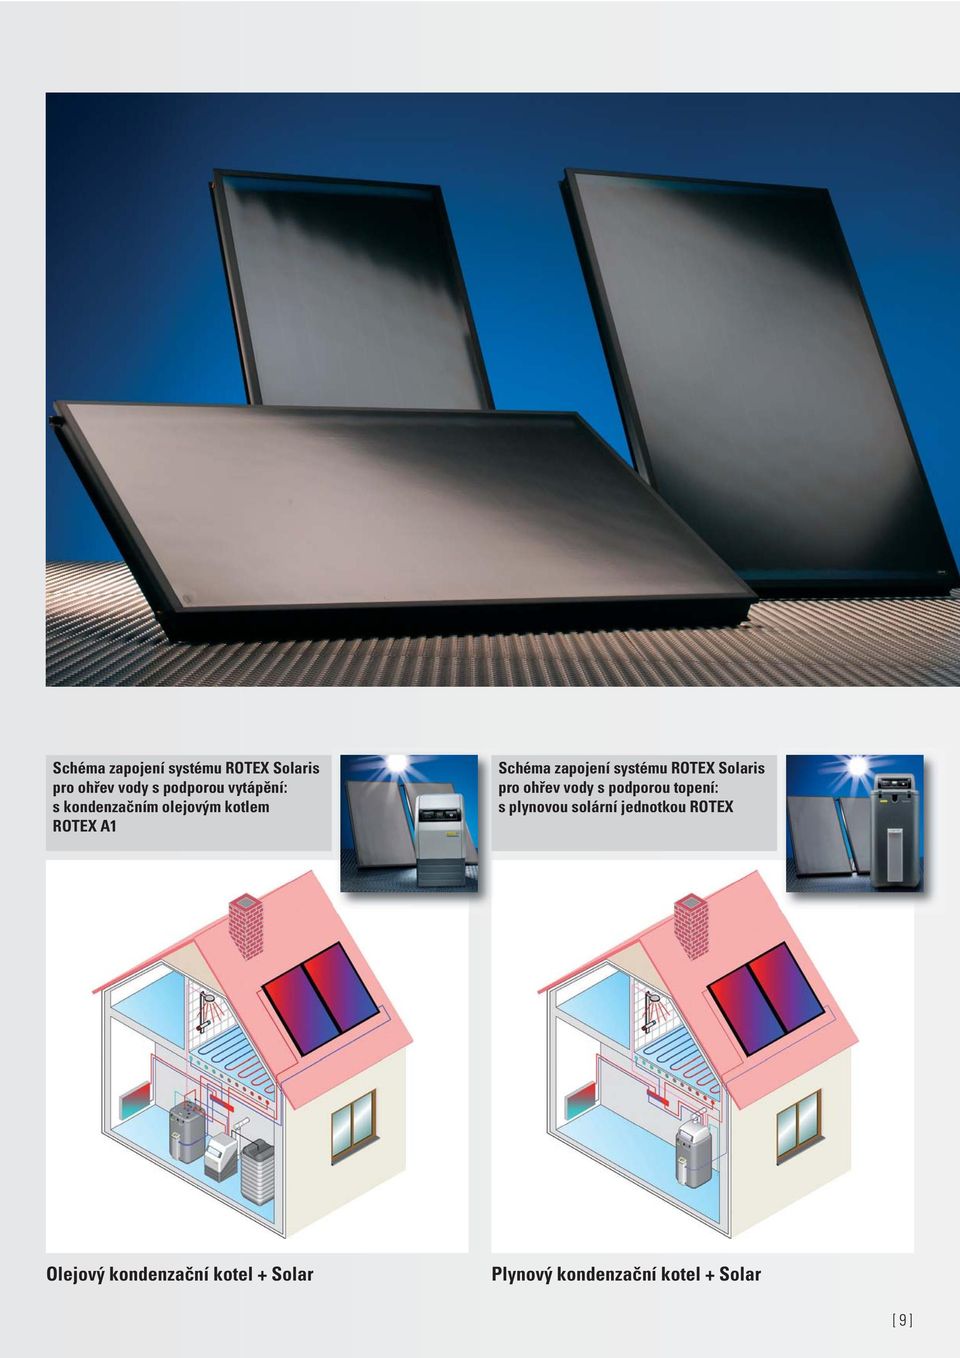 Solaris pro ohřev vody s podporou topení: s plynovou solární jednotkou